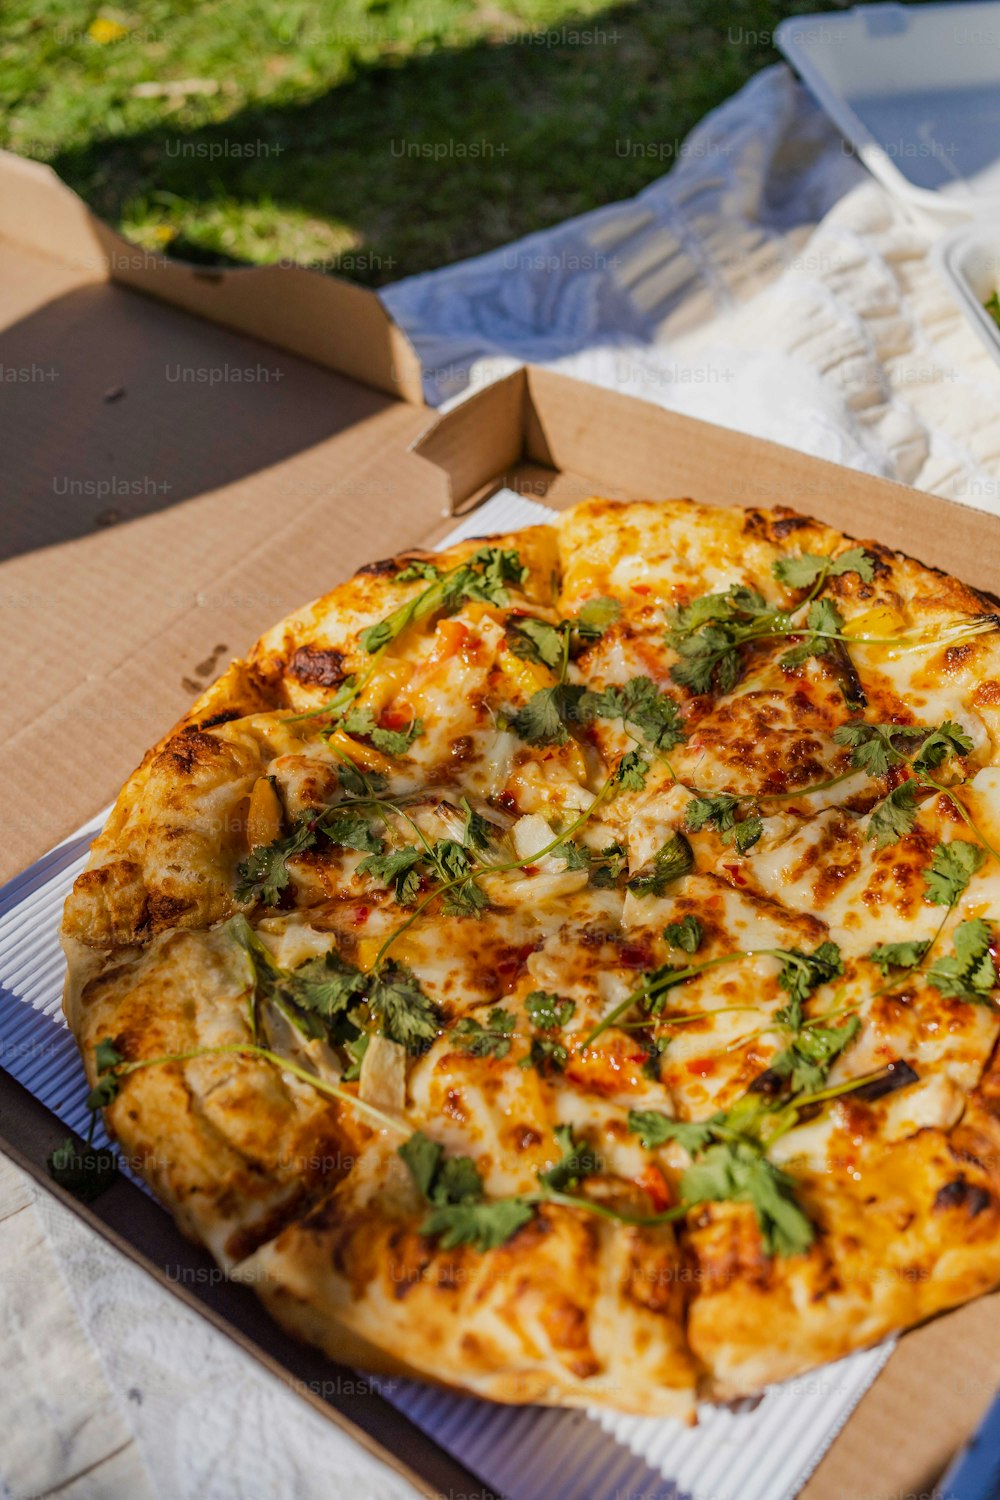 uma pizza sentada em cima de uma caixa de papelão